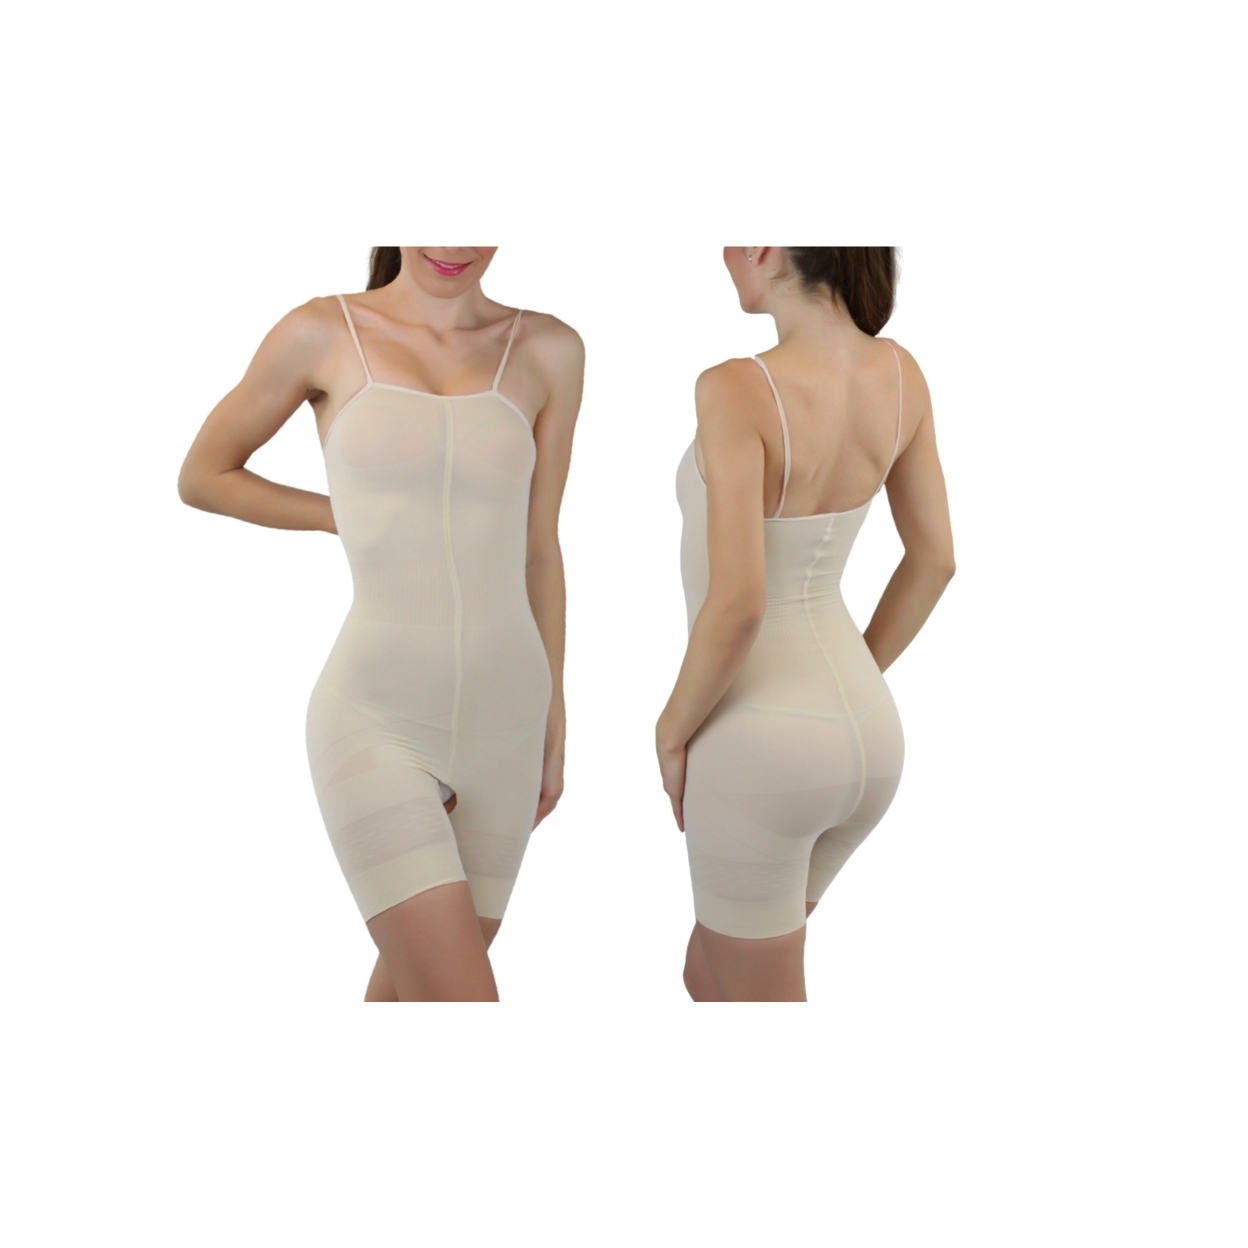 Women's Slimming Body Suit - Beige, 2X